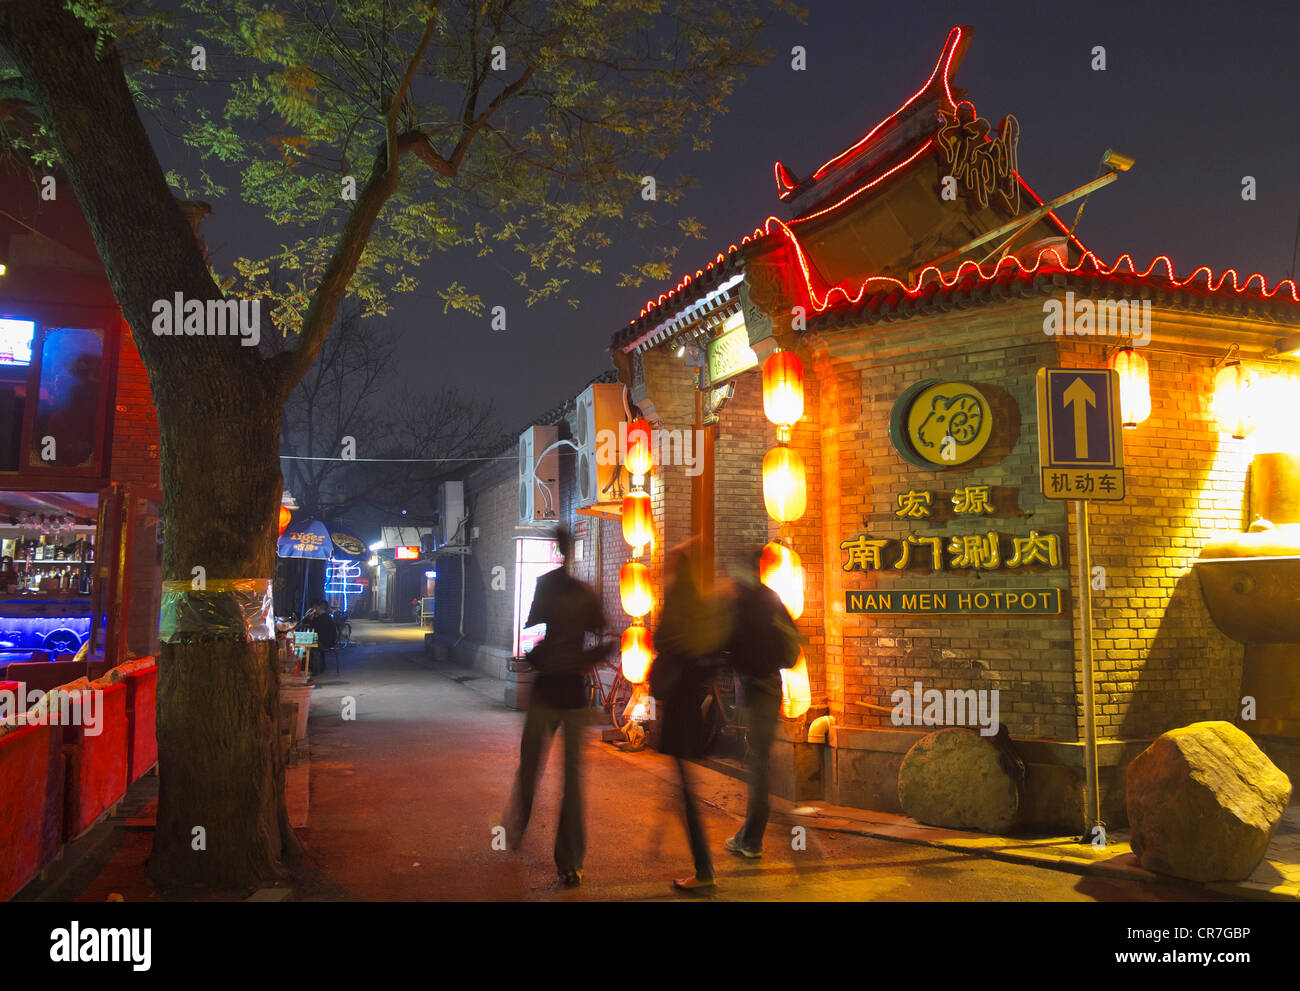 Restaurant de nuit sur les lieux historiques de hutong dans nouveau quartier des divertissements à Beijing Houhai Chine Banque D'Images